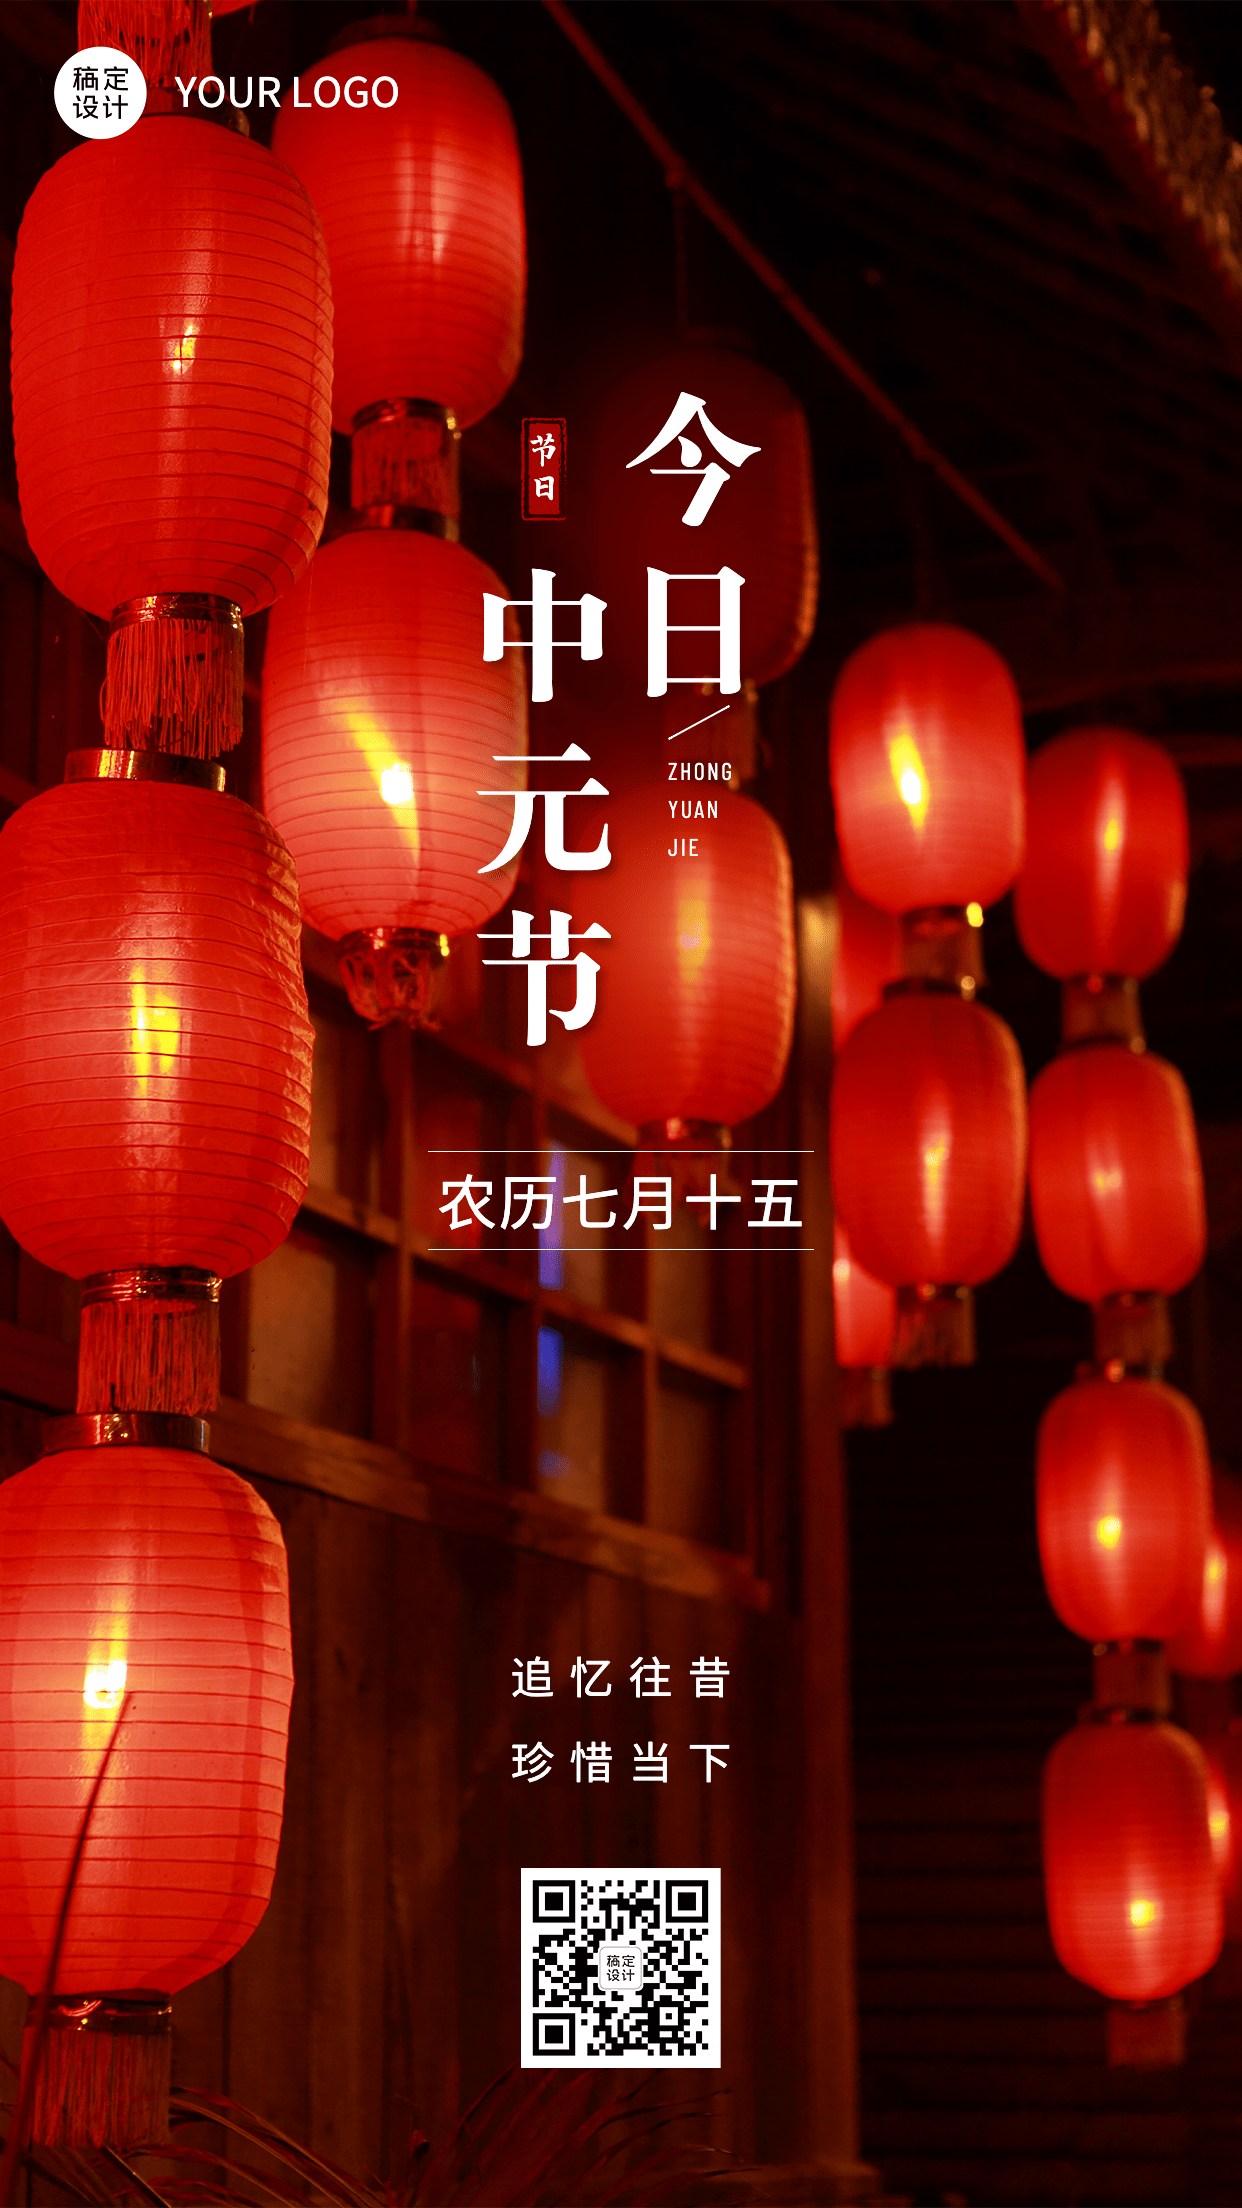 中元节节日祝福排版手机海报预览效果